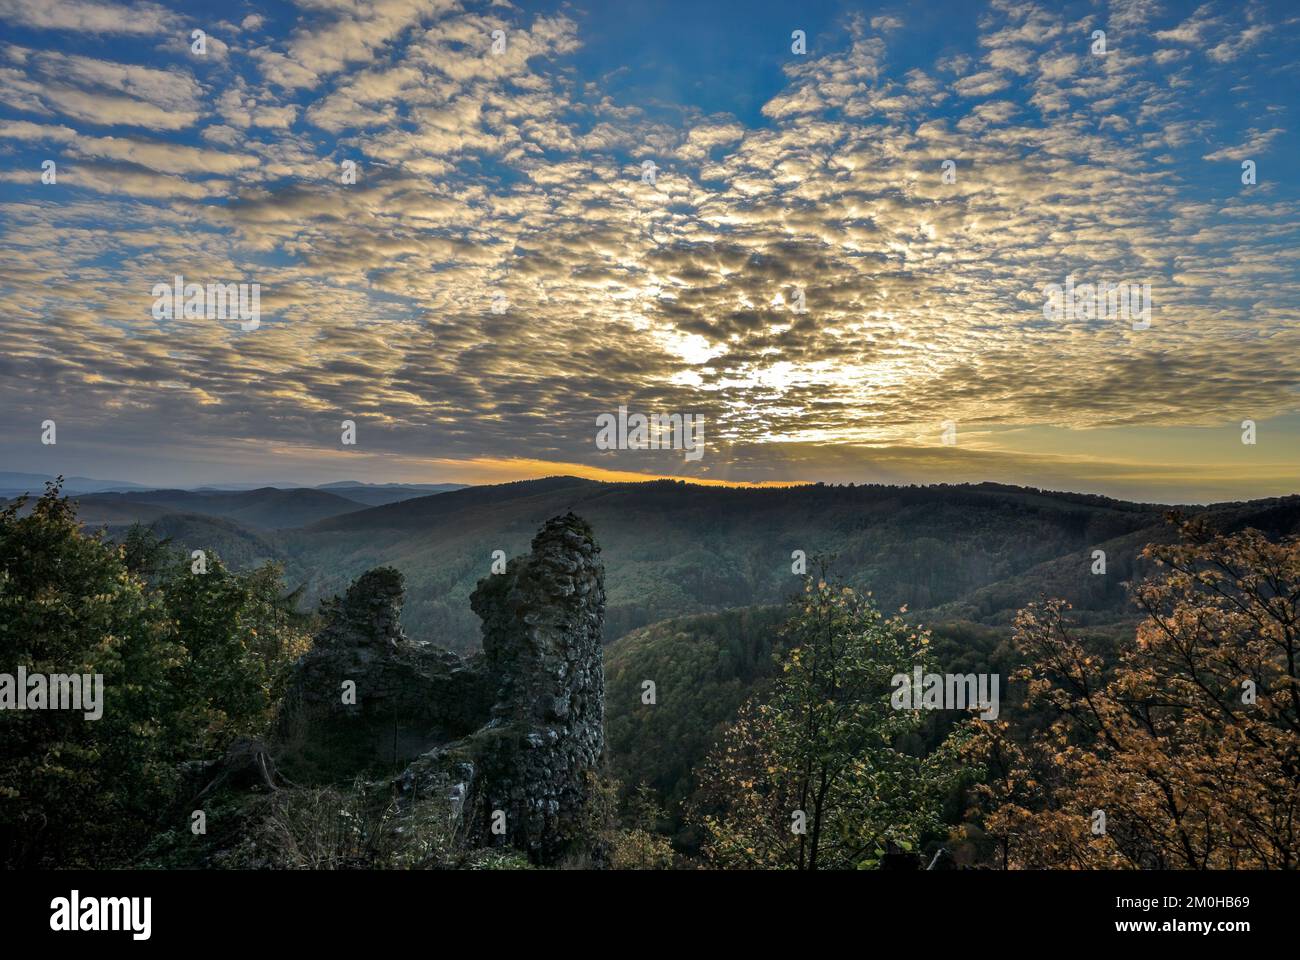 Herbstlandschaft bei Sonnenuntergang mit der Mauer der Burgruine. Wunderschöner blauer Himmel, Wolkenansammlung... Schutzgebiet Vrsatec, Slowakei. Stockfoto